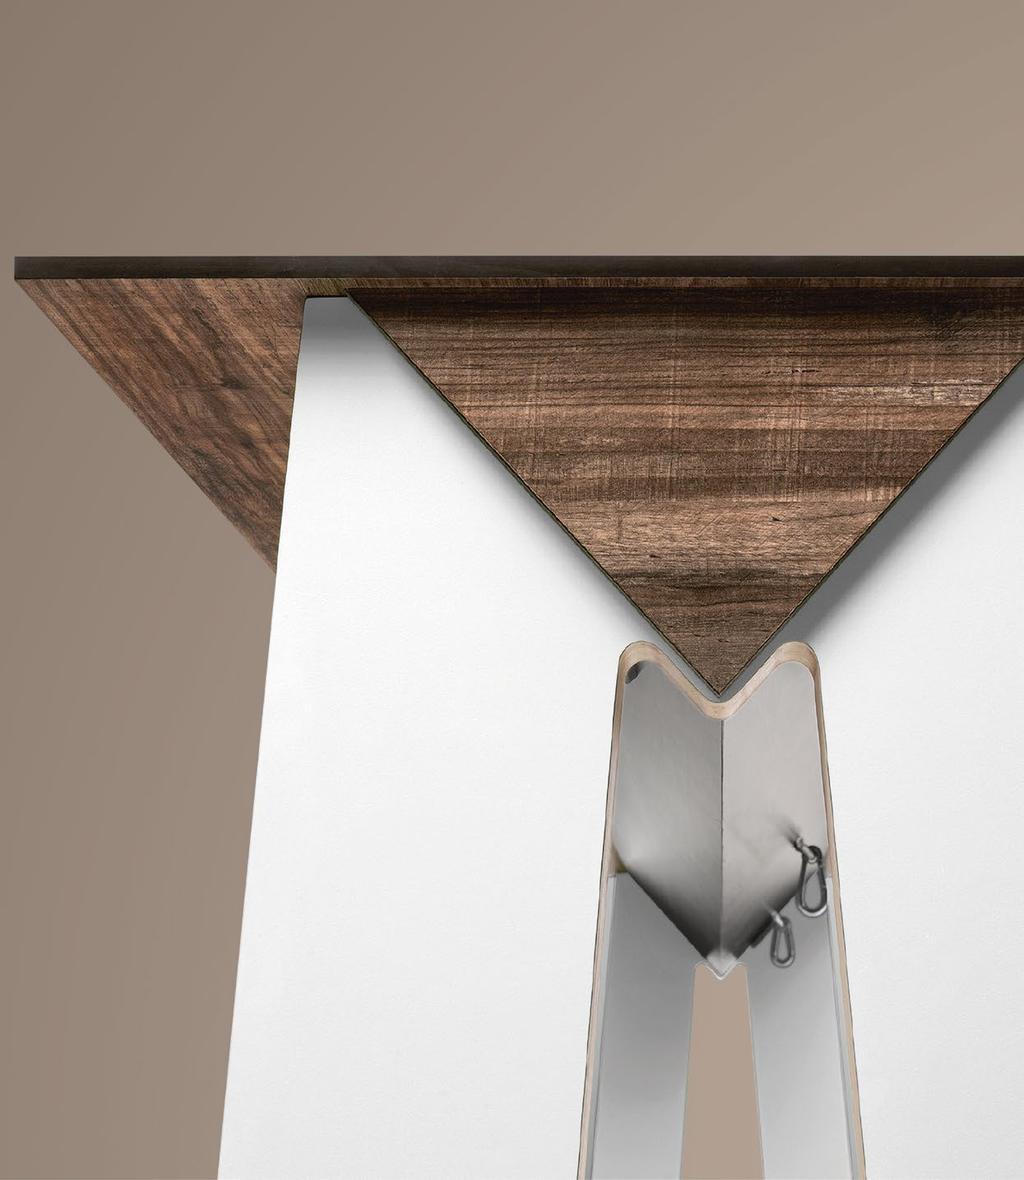 LINK TABLE LINK (Höhe: 115 cm) und LOW LINK (Höhe: 76 cm) sind Tische, die aus einer großen, sowie strapazierfähigen